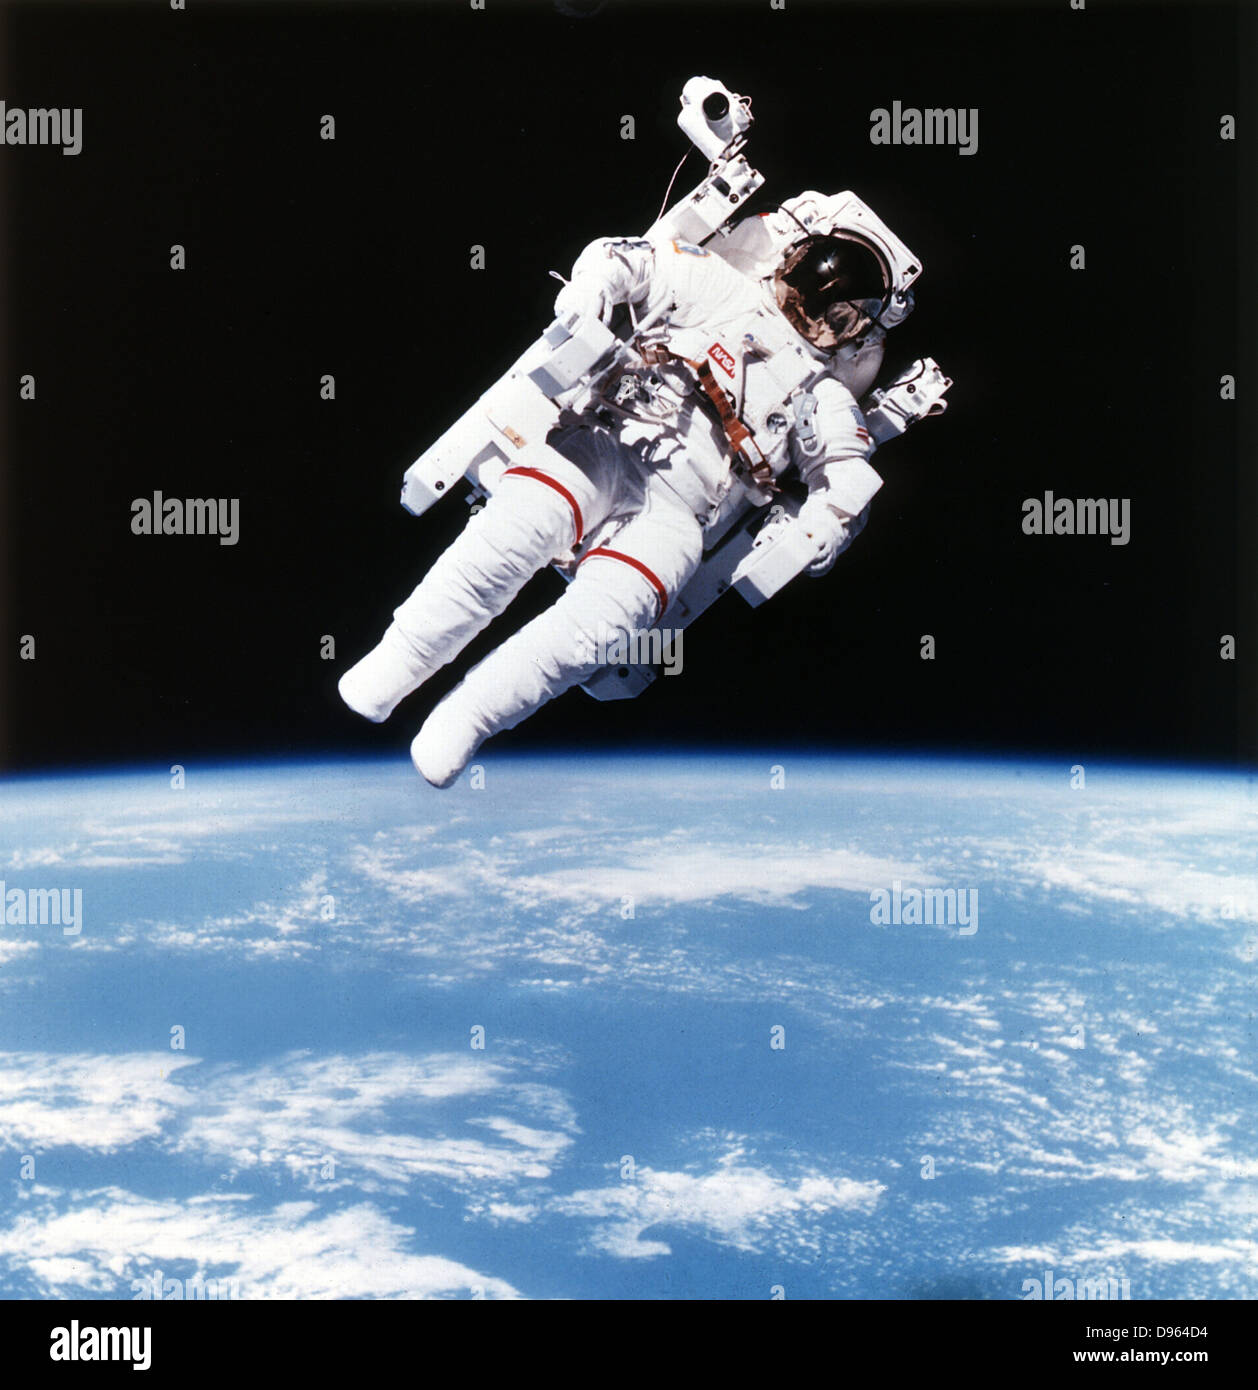 L'astronaute américain Bruce McCandless sur la Mission 41-B sur les sorties dans l'espace à l'aide de premiers mouvements, d'azote, contrôlée par la main-d'libres, donnant une plus grande mobilité aux astronautes.. 1984. Photographie de la NASA Banque D'Images